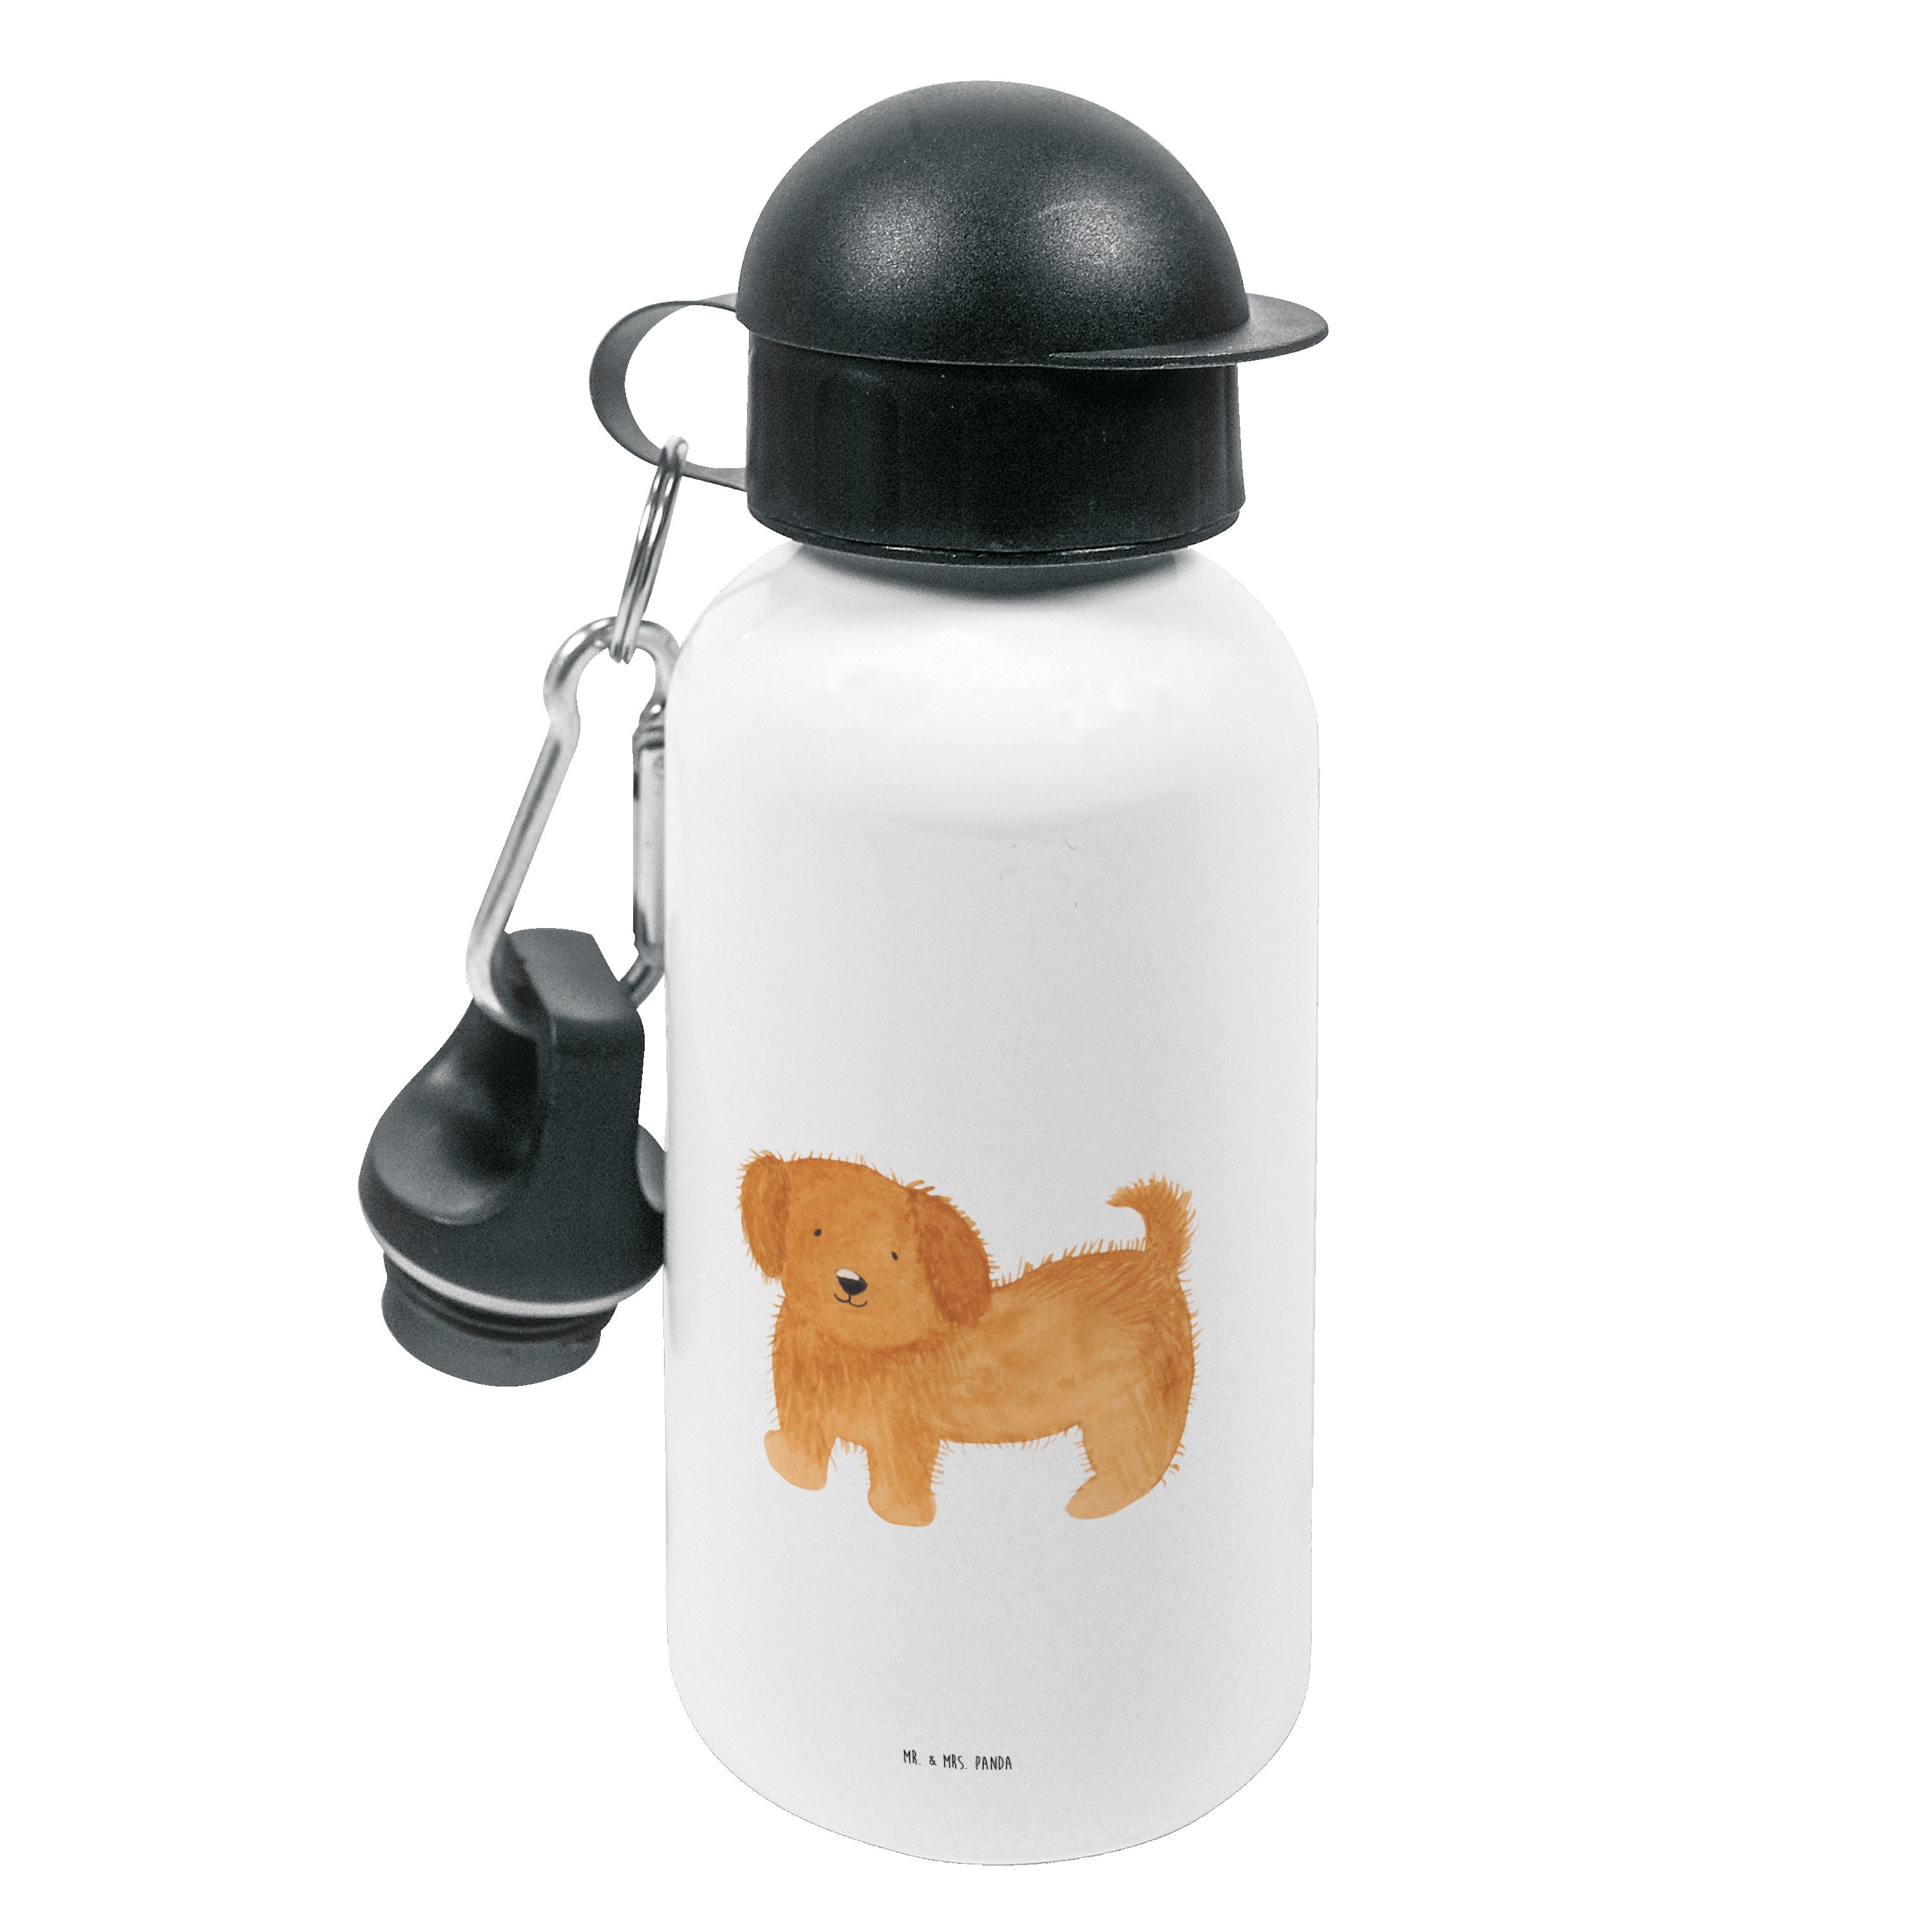 Mr. & Mrs. Panda Trinkflasche Hund flauschig - Weiß - Geschenk, Frauchen, Kinder, Hundemotiv, Kinde